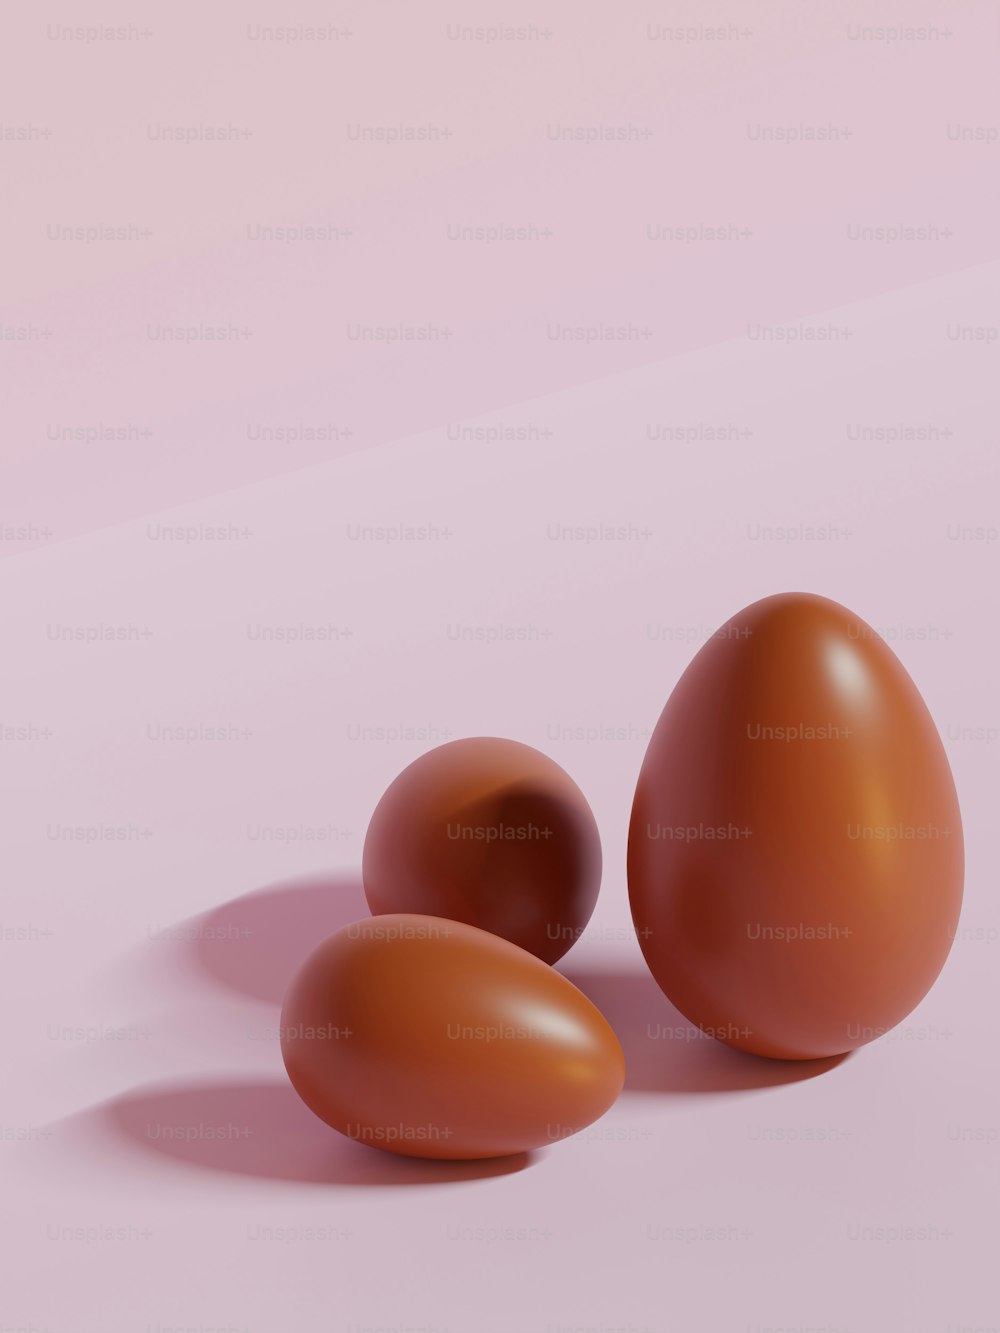 tre uova marroni su uno sfondo rosa